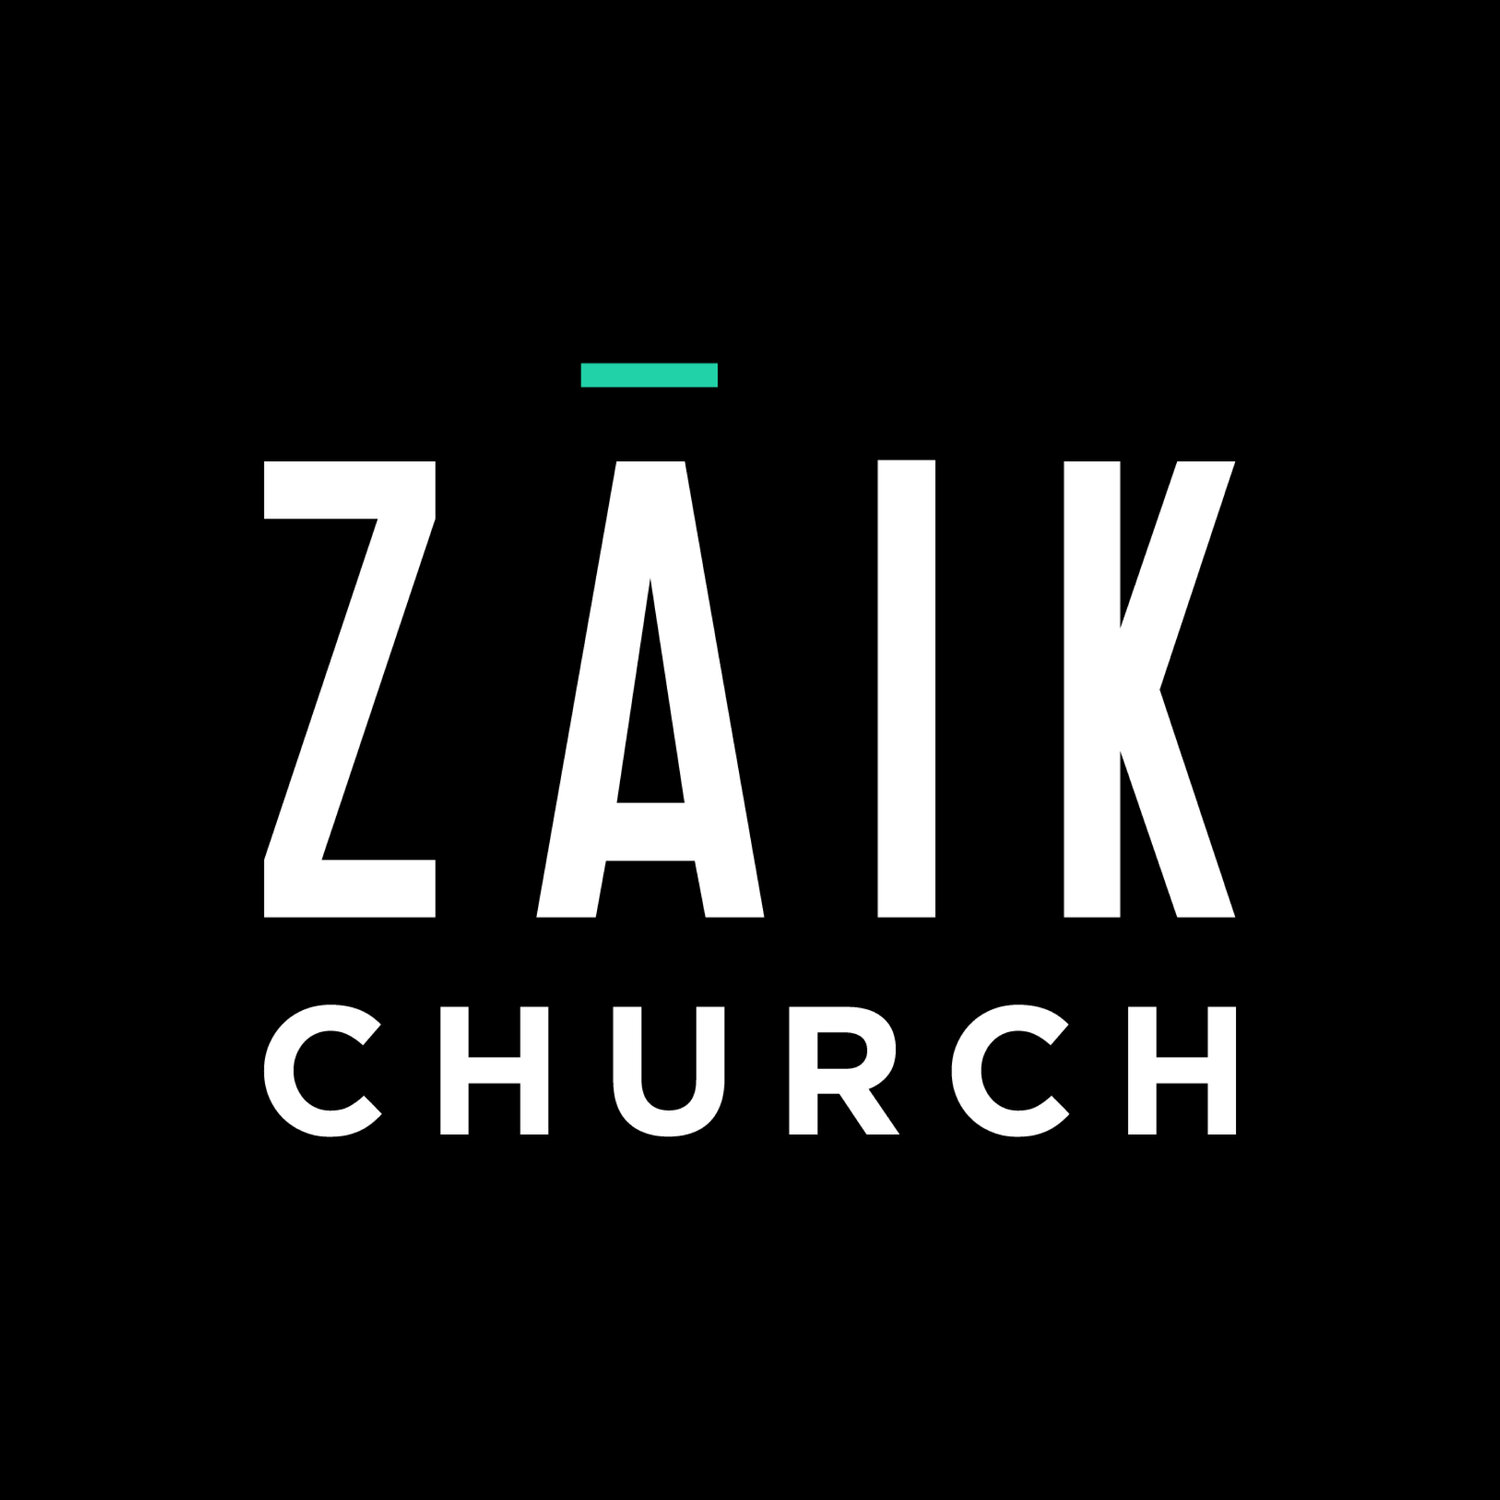 ZAIK Church